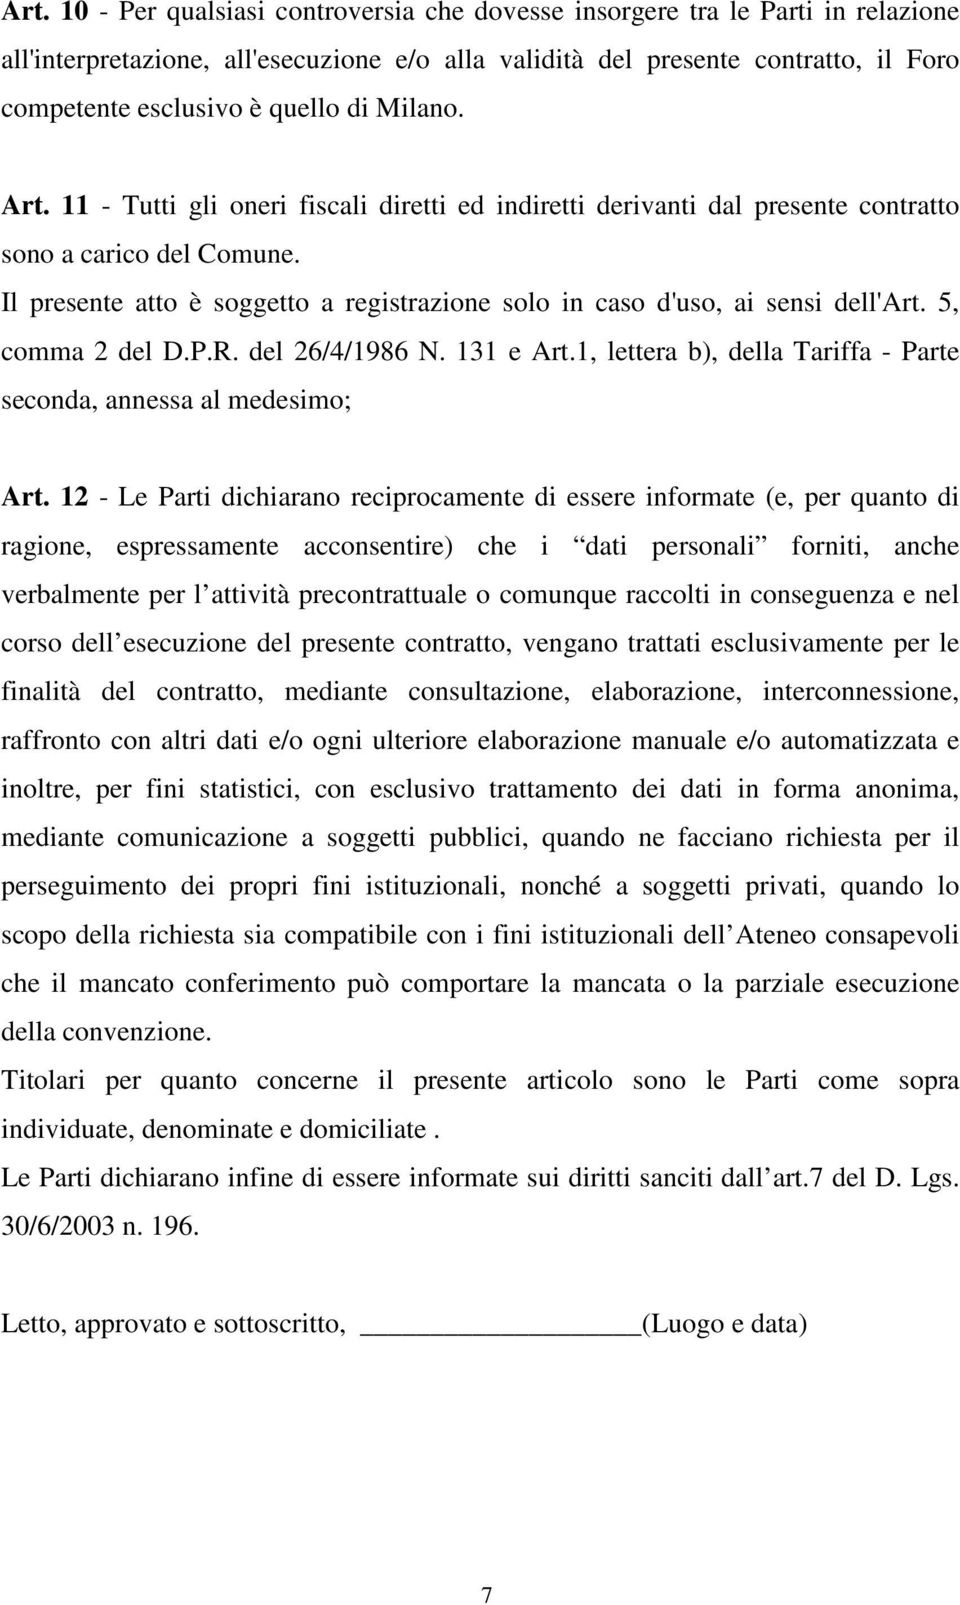 Il presente atto è soggetto a registrazione solo in caso d'uso, ai sensi dell'art. 5, comma 2 del D.P.R. del 26/4/1986 N. 131 e Art.